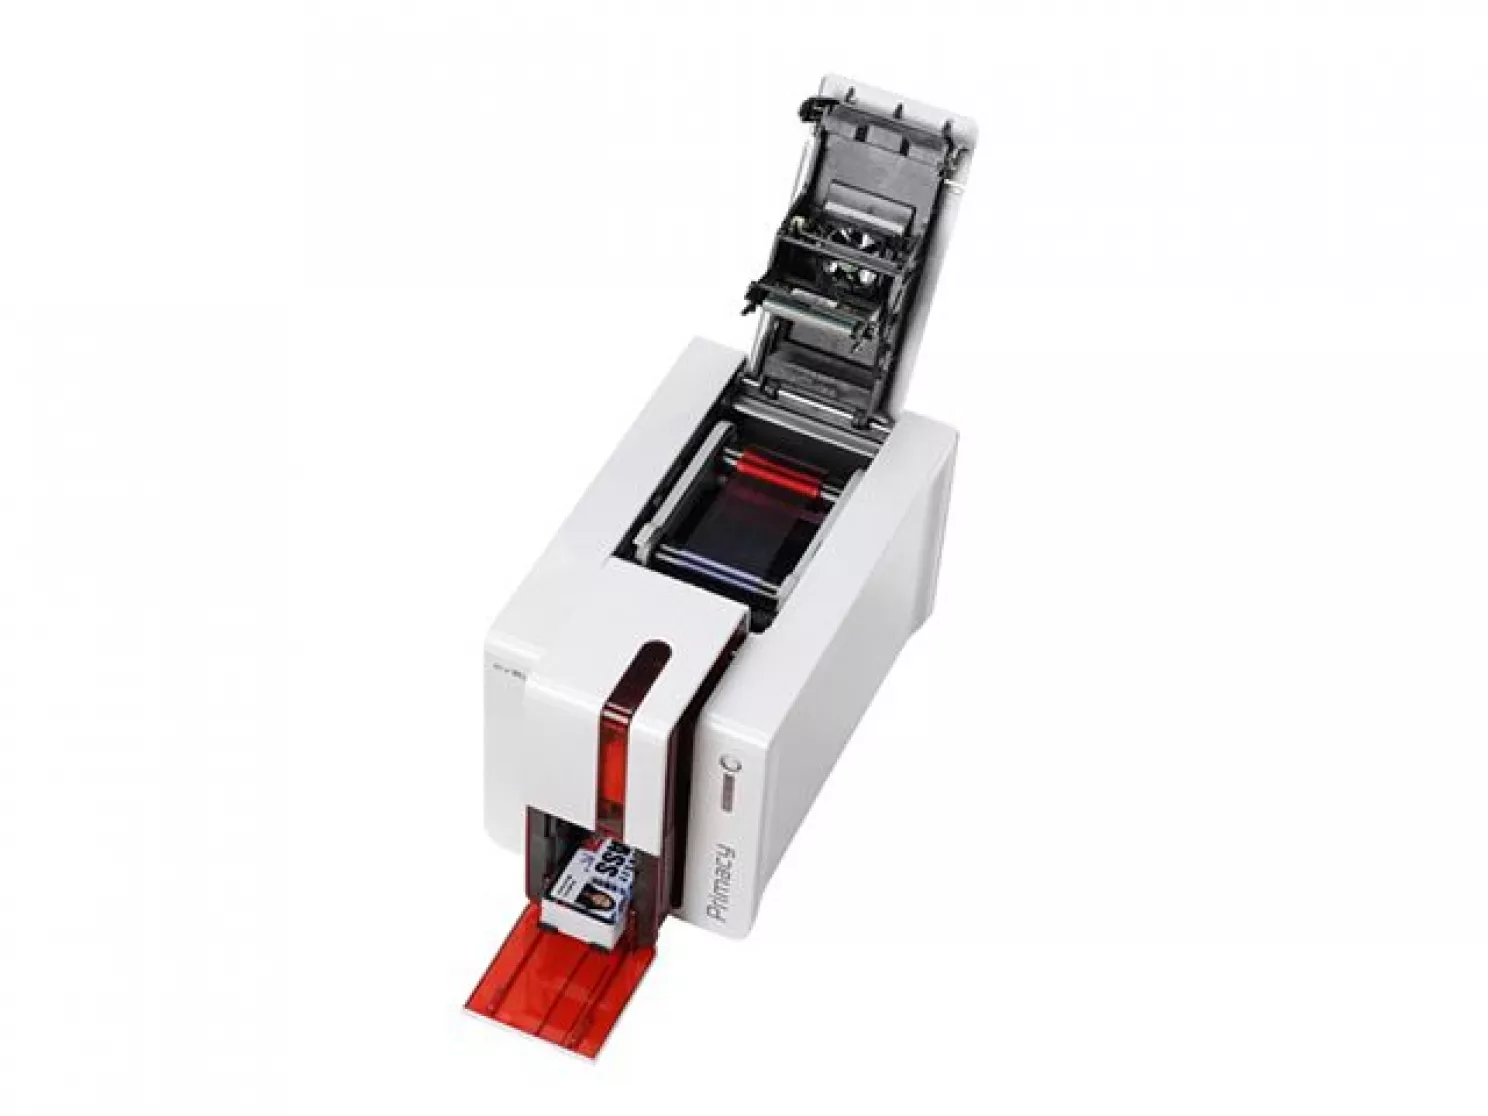 Evolis Primacy card printer